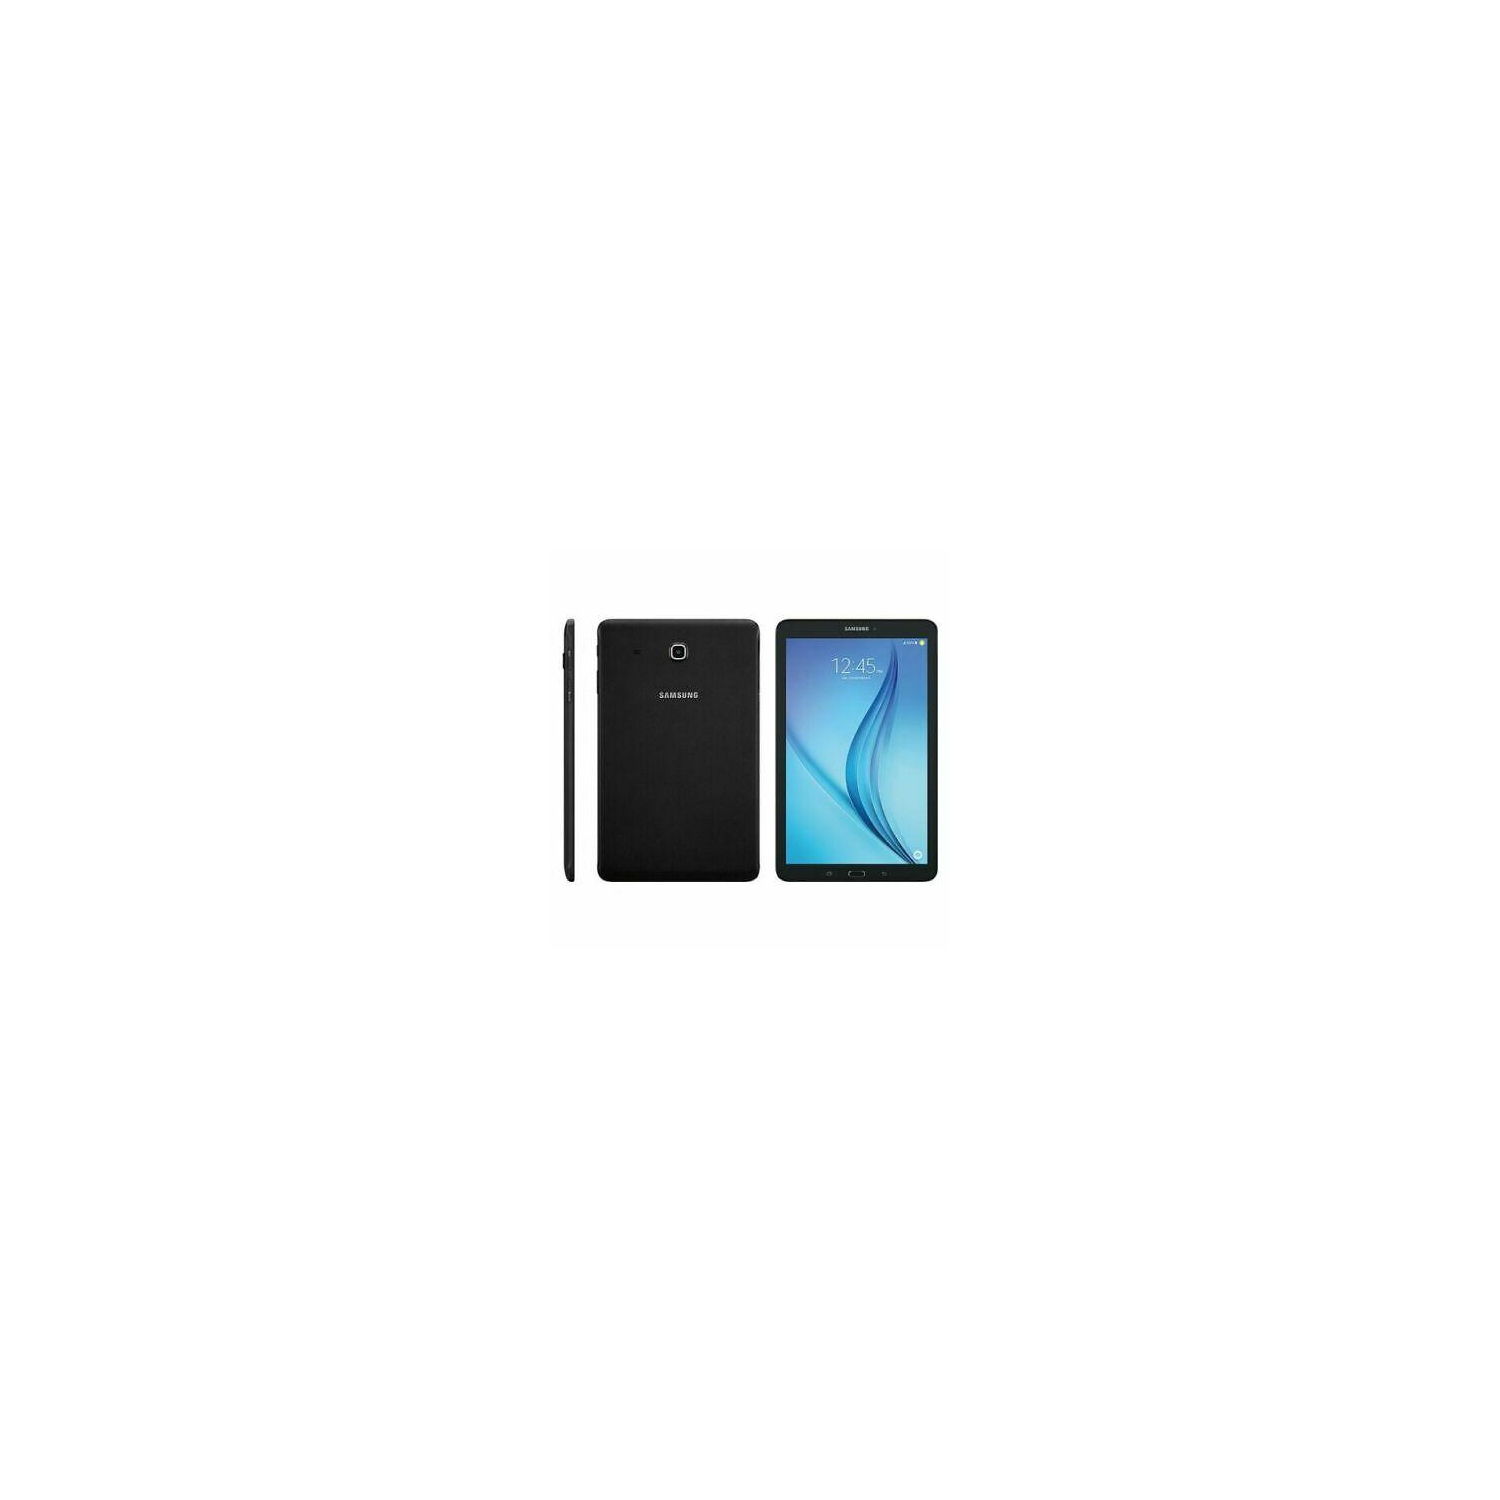 Refurbished (Good) - Samsung Galaxy Tab E SM-T377V 16GB Tablet - 8" Black